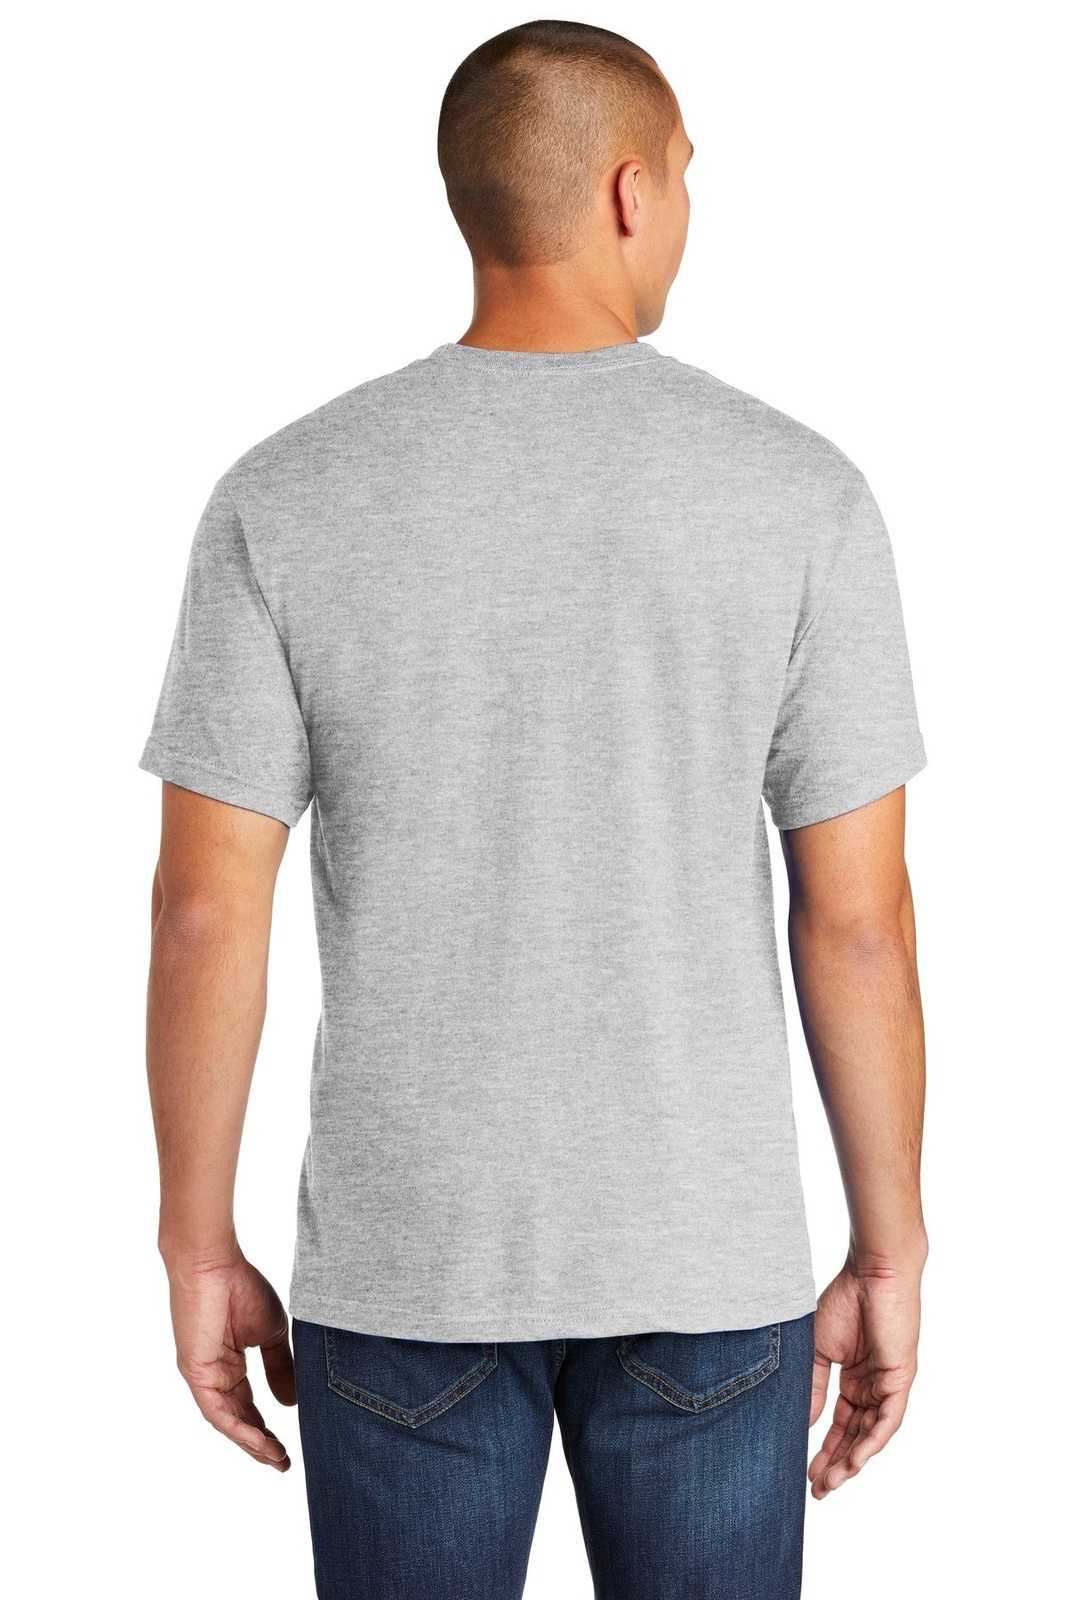 Gildan H000 Hammer T-Shirt - Sport Gray - HIT a Double